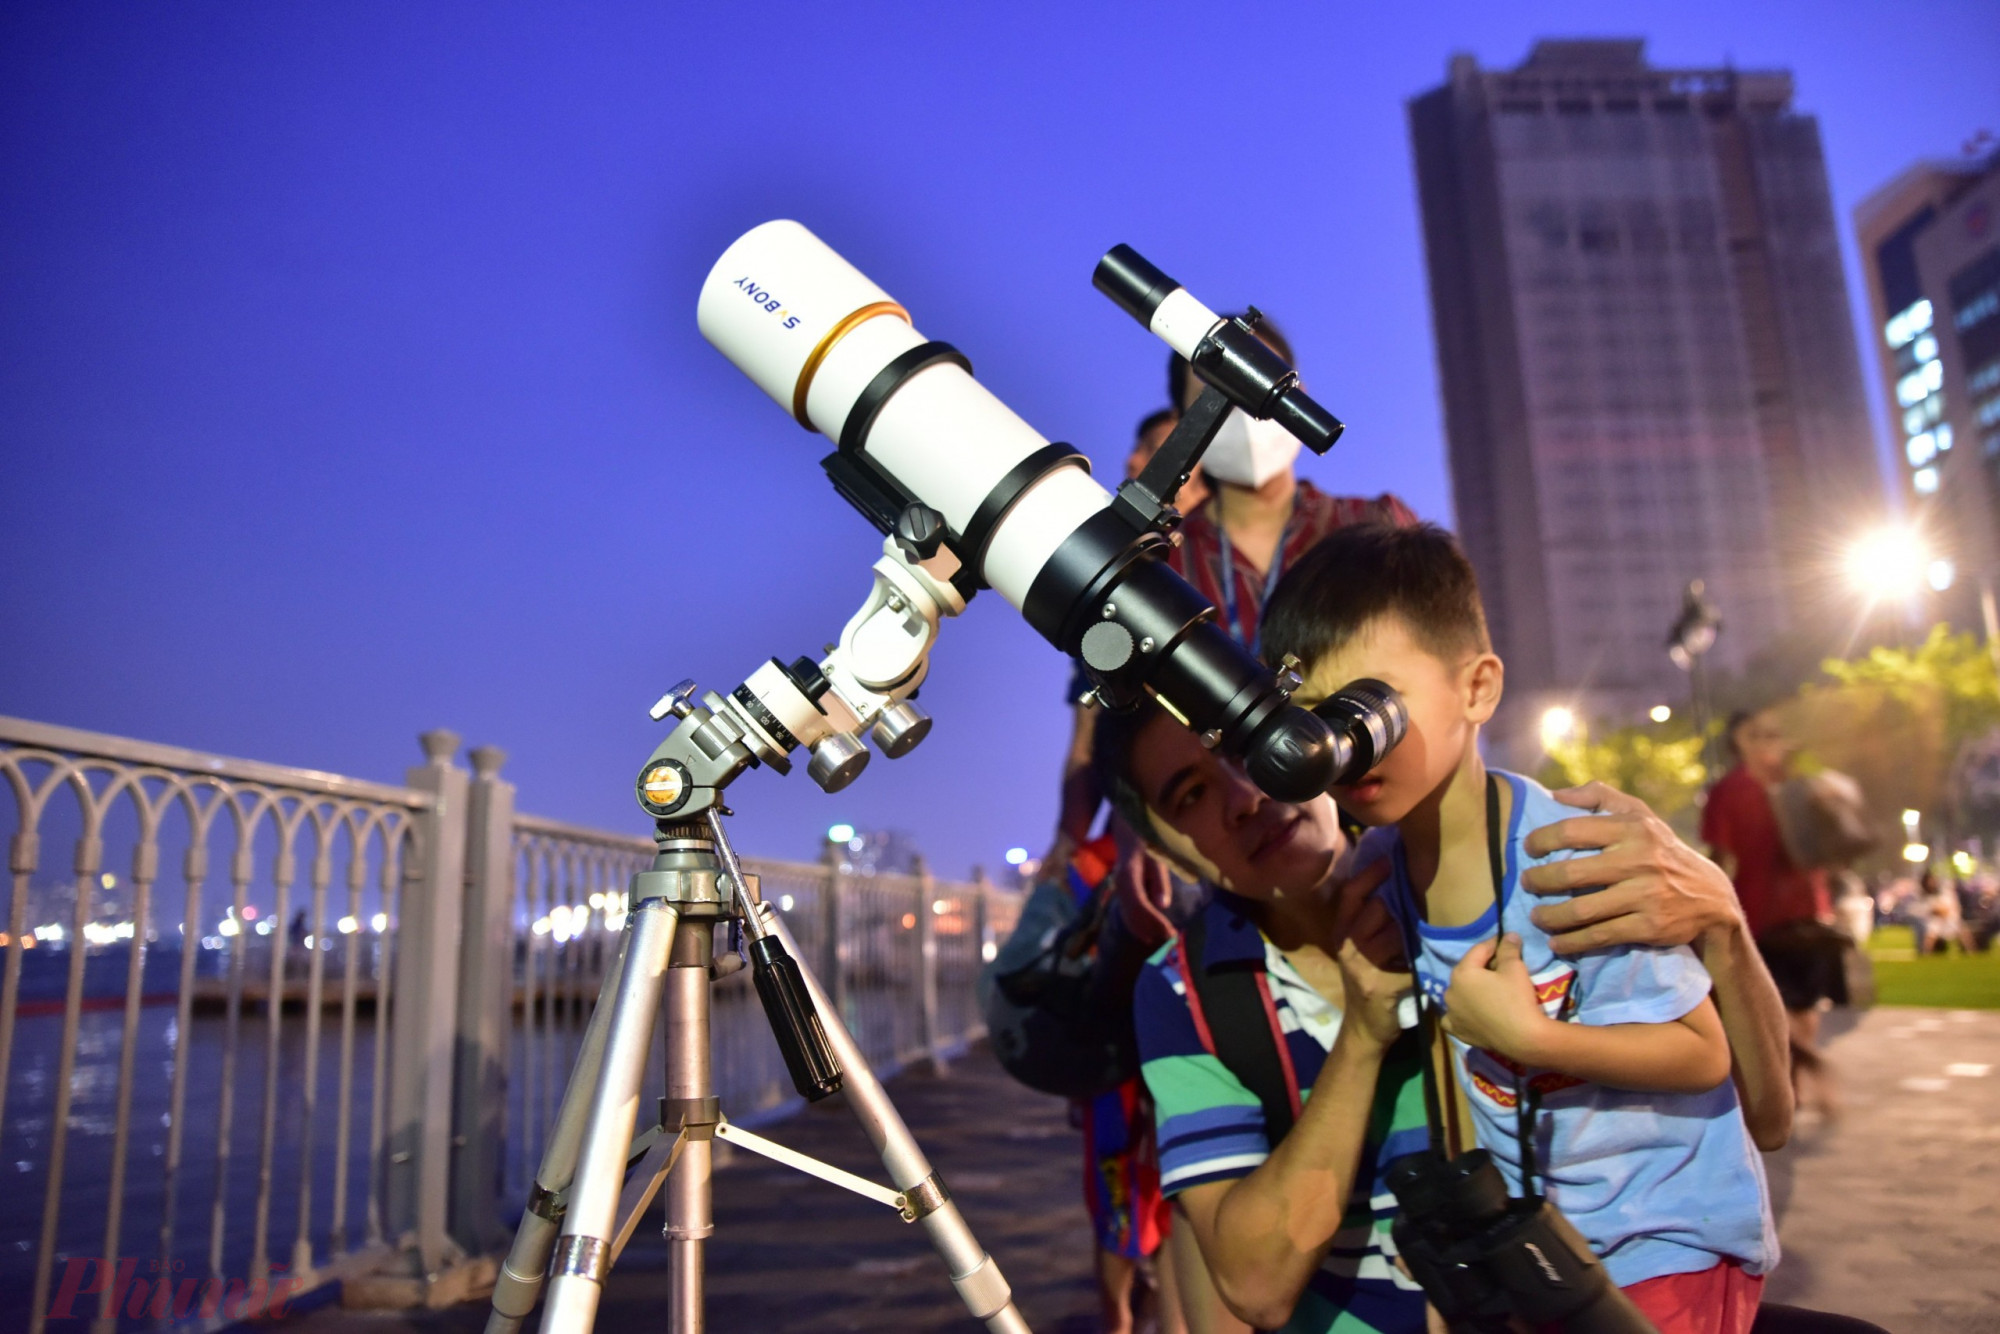 Người dân có thể quan sát hiện tượng nguyệt thực toàn phần bằng mắt thường. Nếu sử dụng thêm những chiếc kính thiên văn phổ thông hay ống nhòm quan sát thì xem được đẹp hơn.